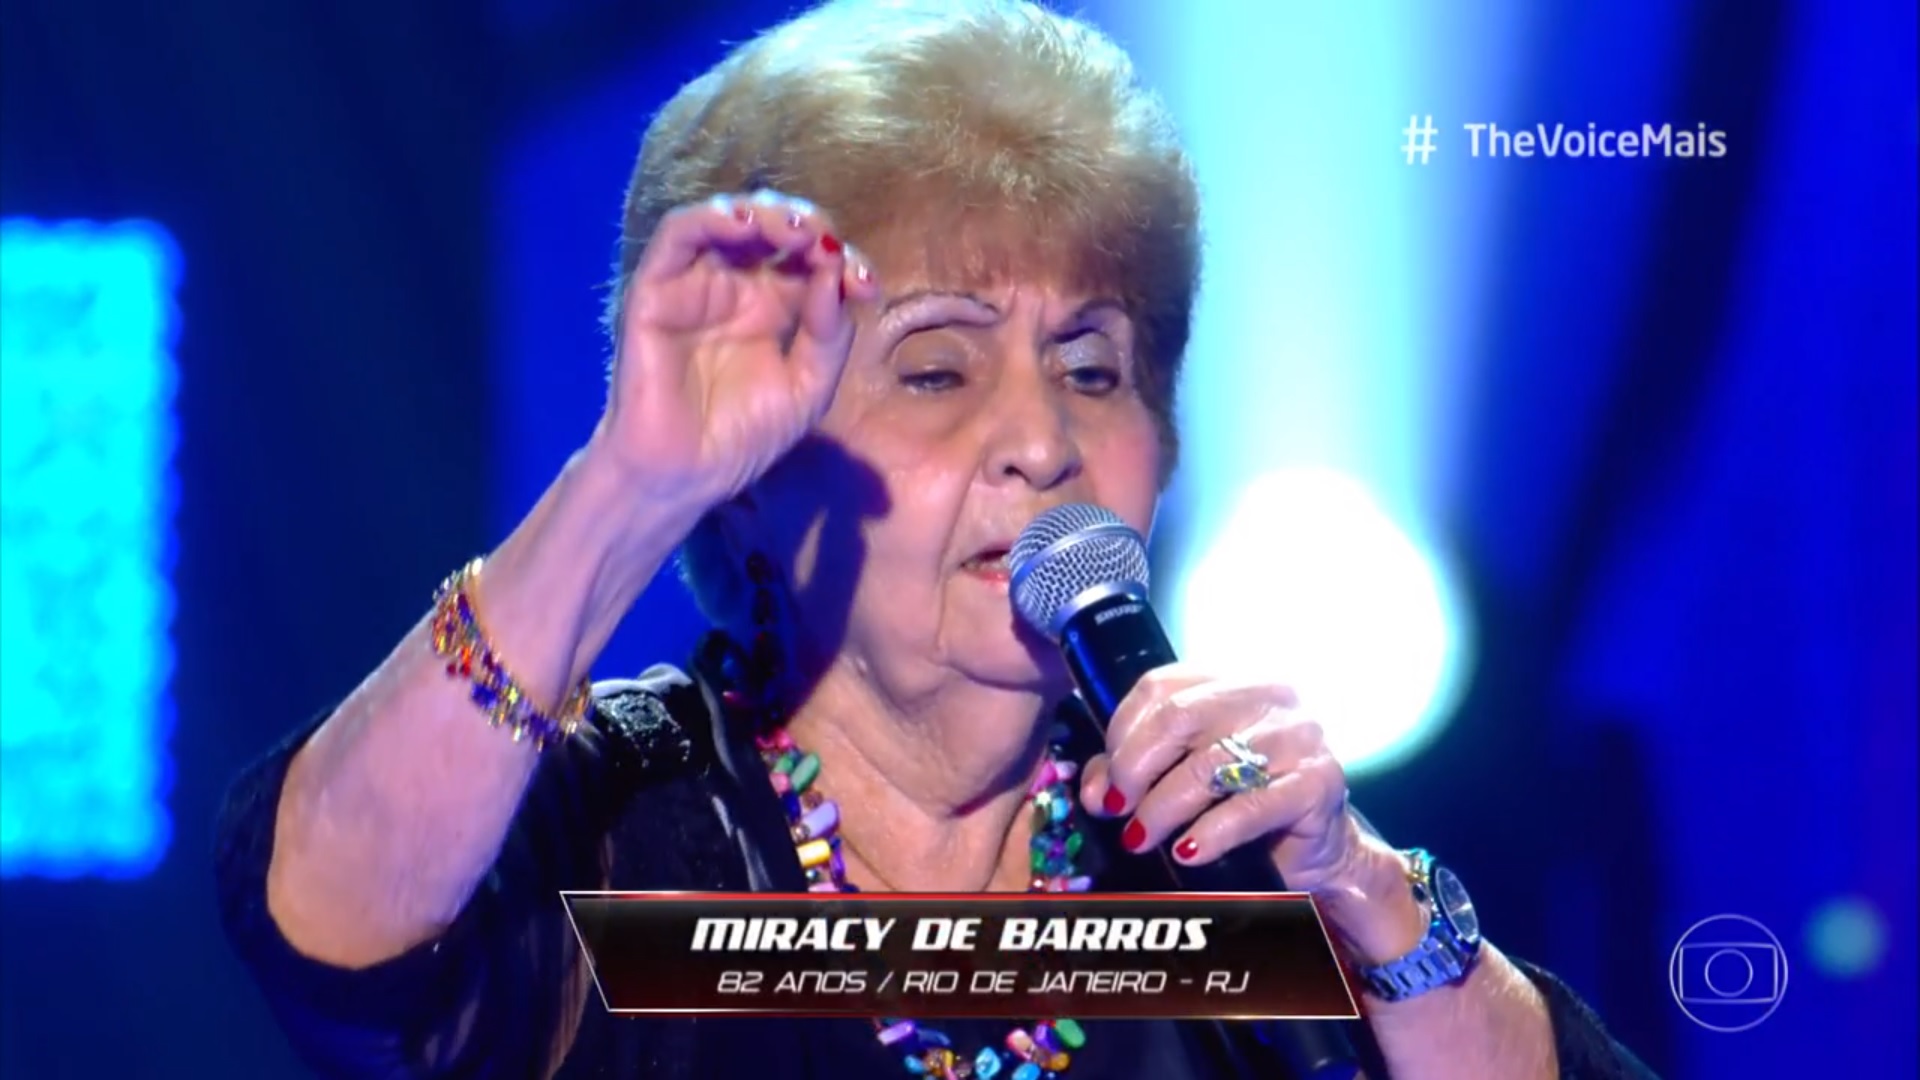 Miracy deu um show no palco do The Voice e todos os jurados aprovaram // Foto: Reprodução/TV Globo